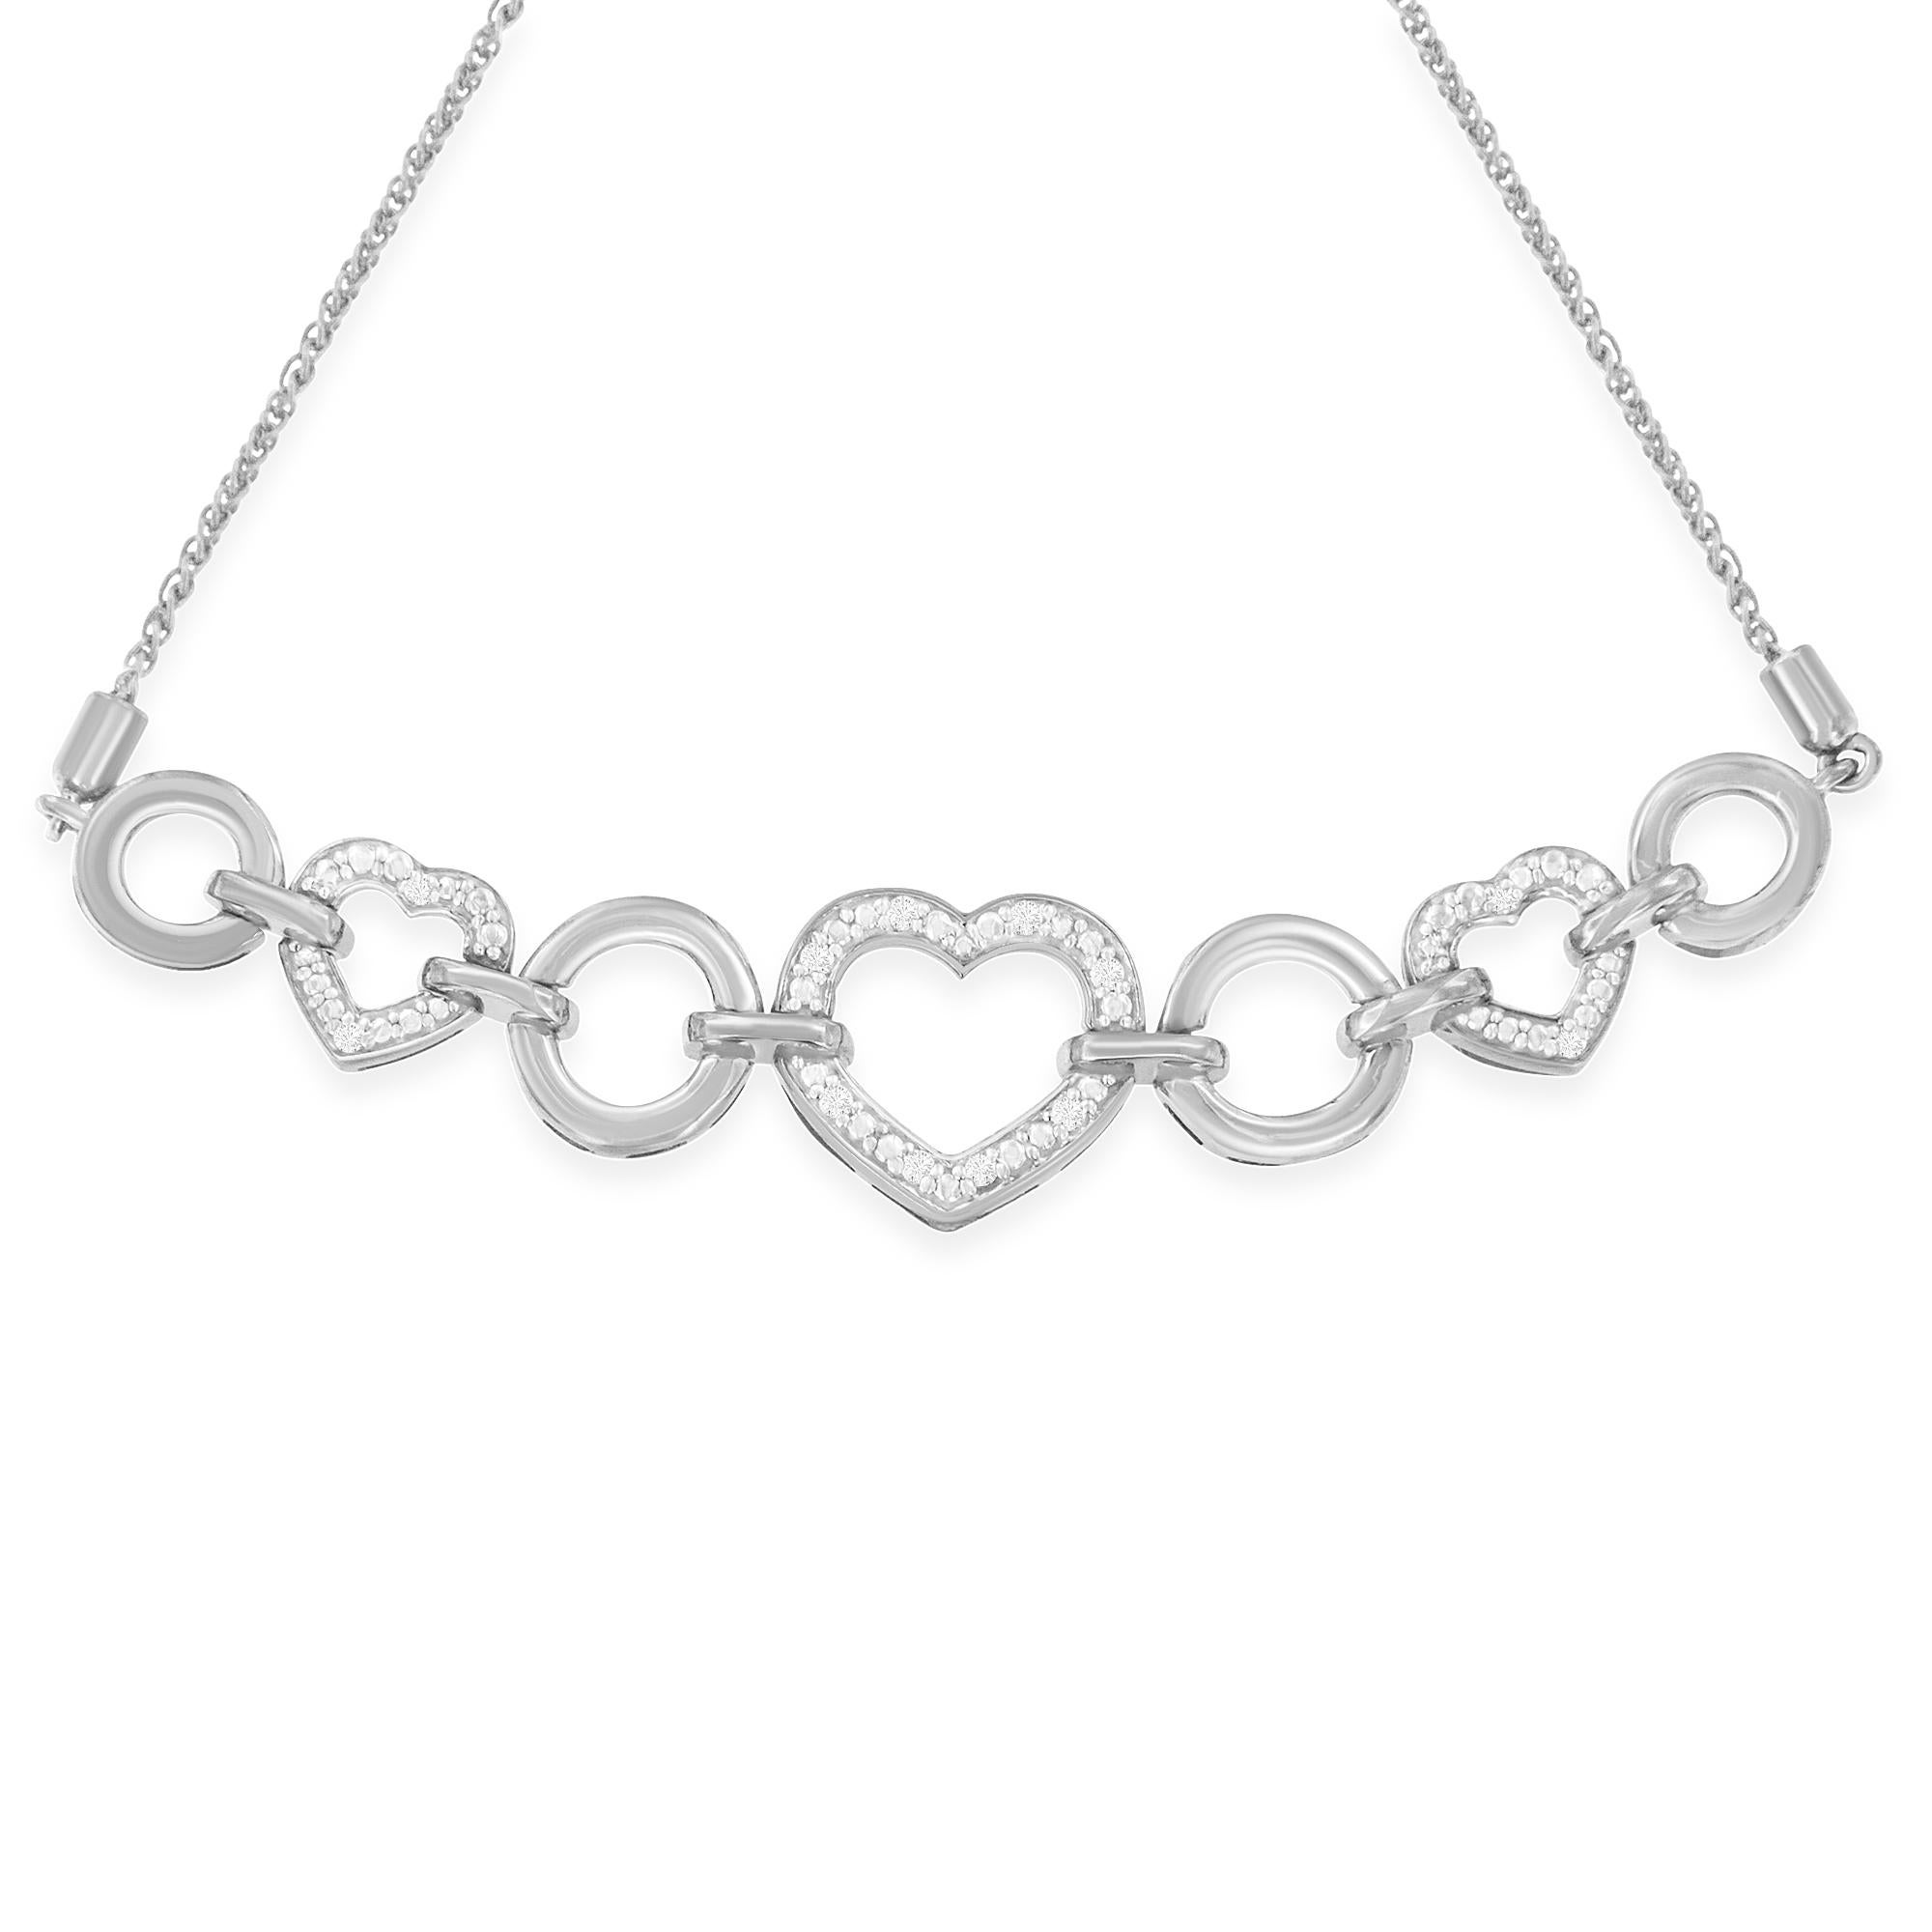 Als Symbol Ihrer Zuneigung ist dieses glitzernde Herz-Bolo-Armband mit Diamanten das perfekte Geschenk für ein besonderes Mädchen in jedem Alter. Dieses zierliche Schmuckstück aus 925er Sterlingsilber besteht aus drei mit Diamanten und Perlen